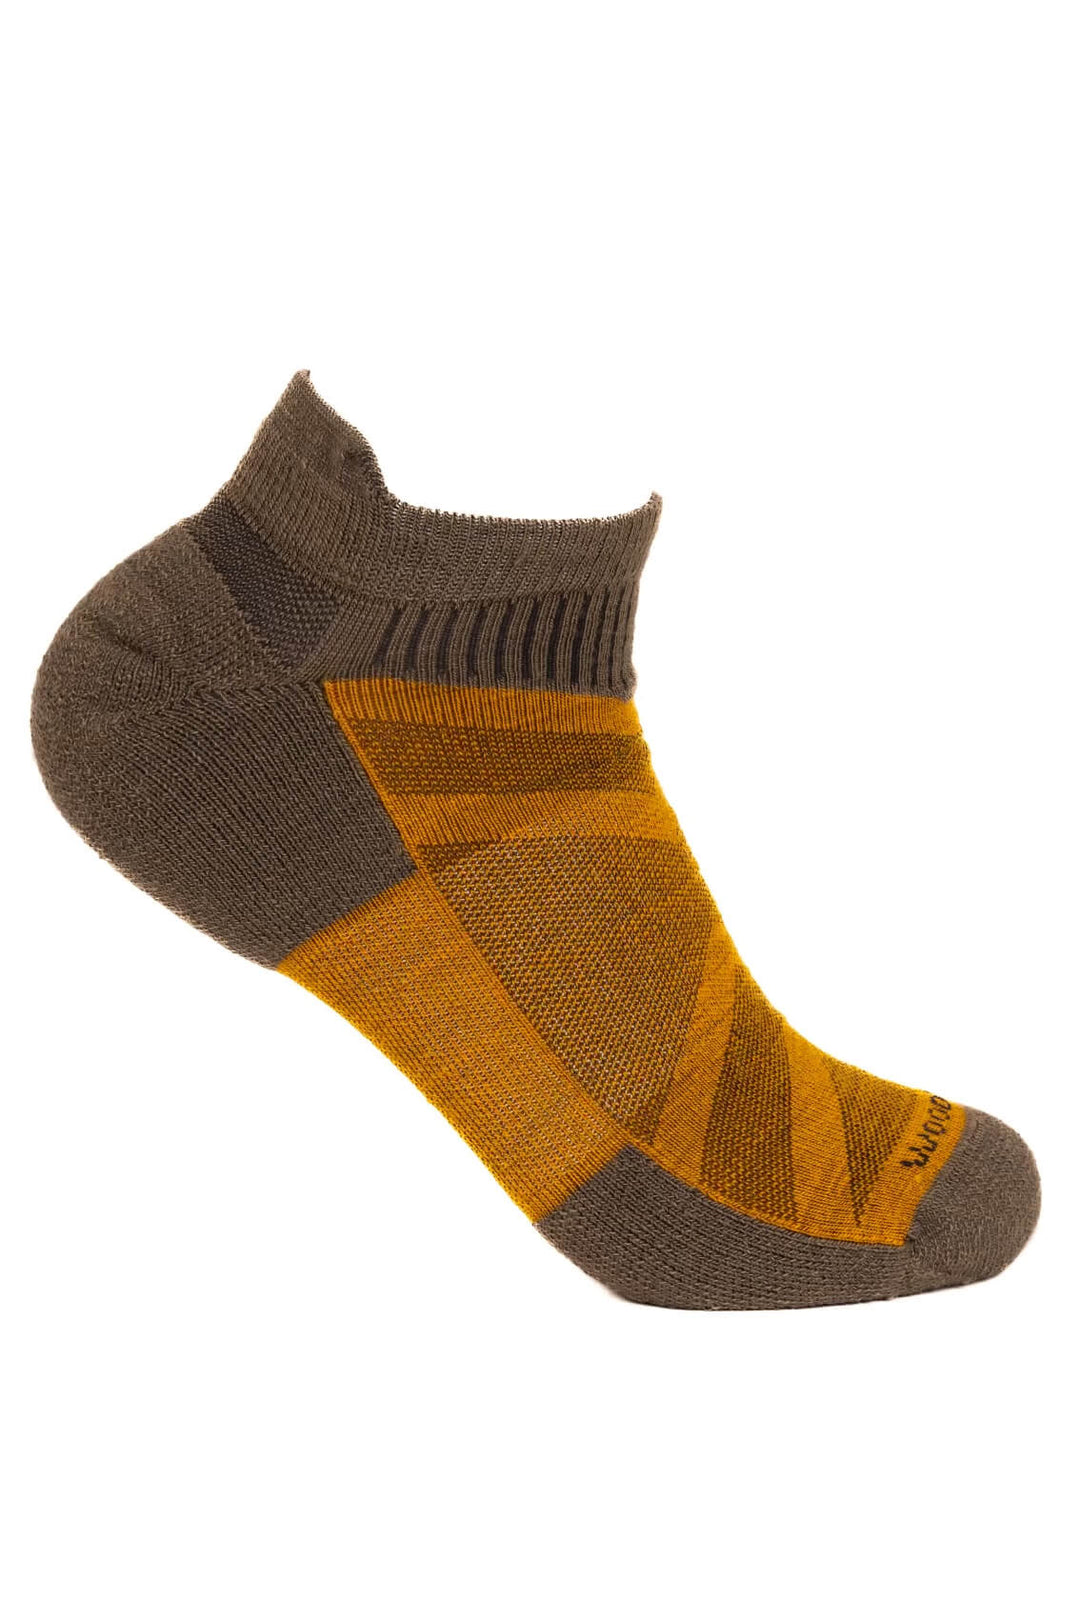 Sheeple Merino Ankle Sock - Sage Rust - Woodroad Gear Co.